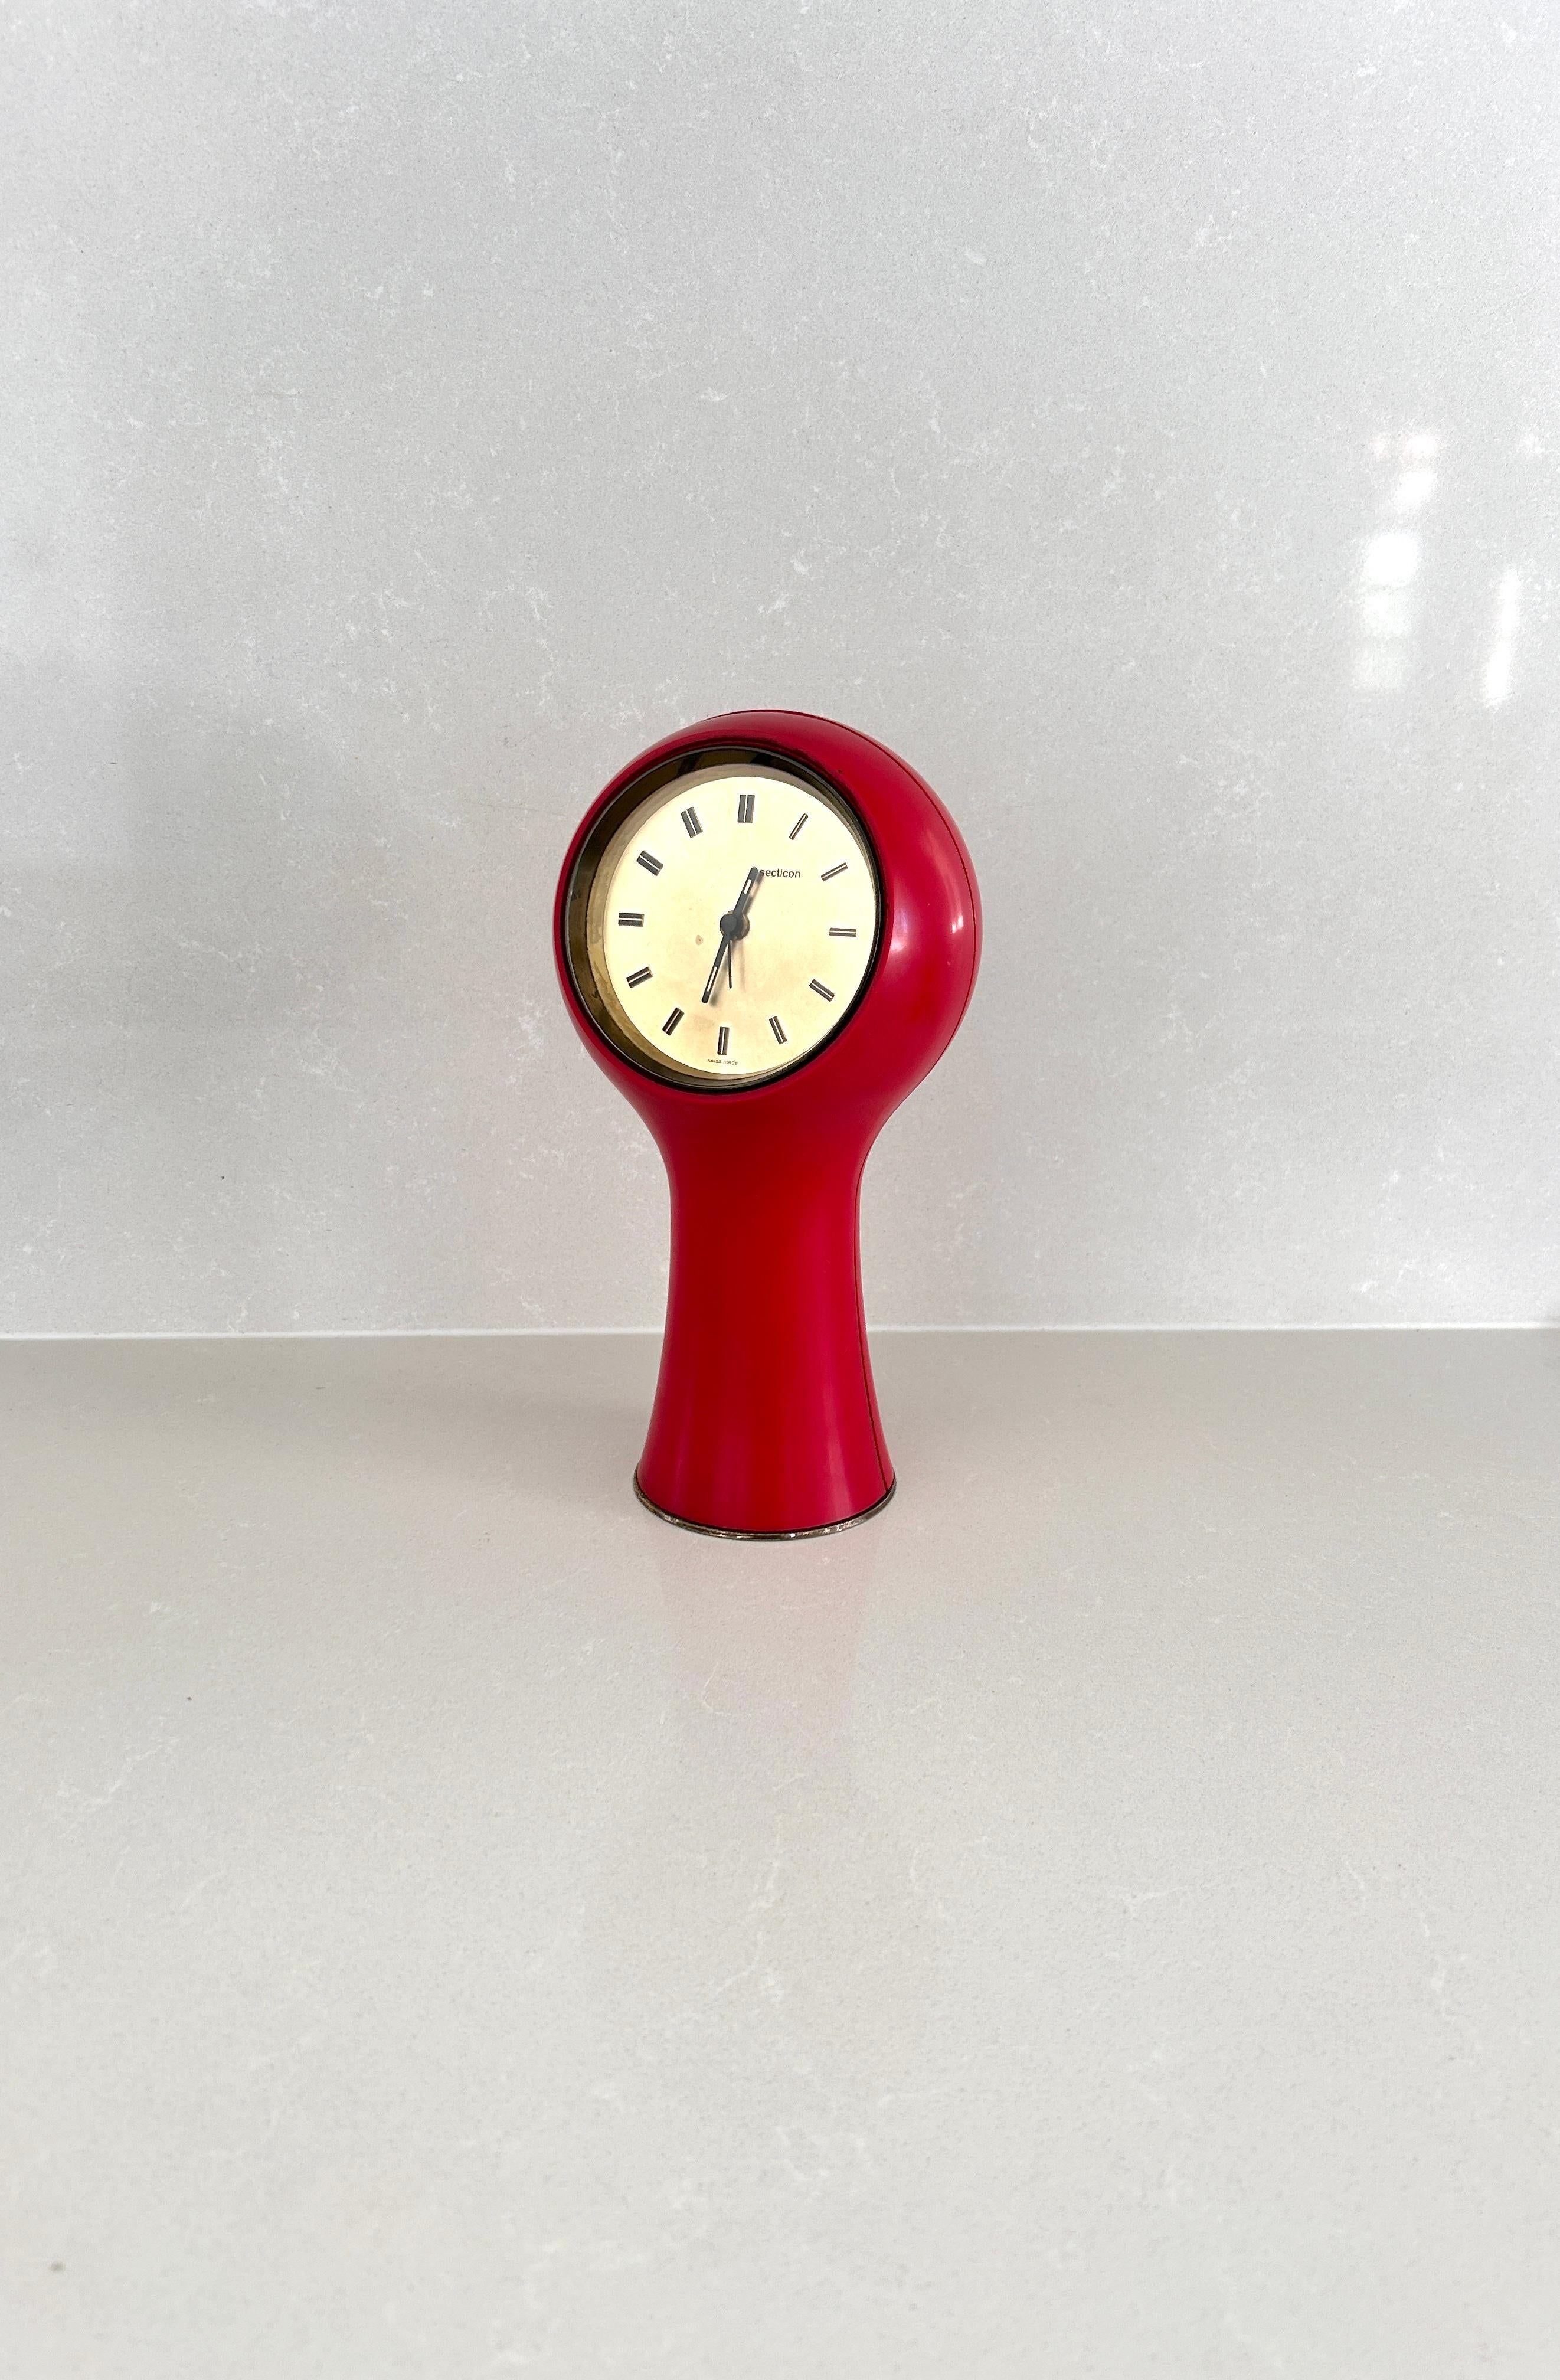 Horloge de table conçue par Angelo Mangiarotti et Bruno Morassutti en 1956 pour la société suisse Le Porte-Echappement Universel.

Cadre en plastique rouge, mouvement à pile.
